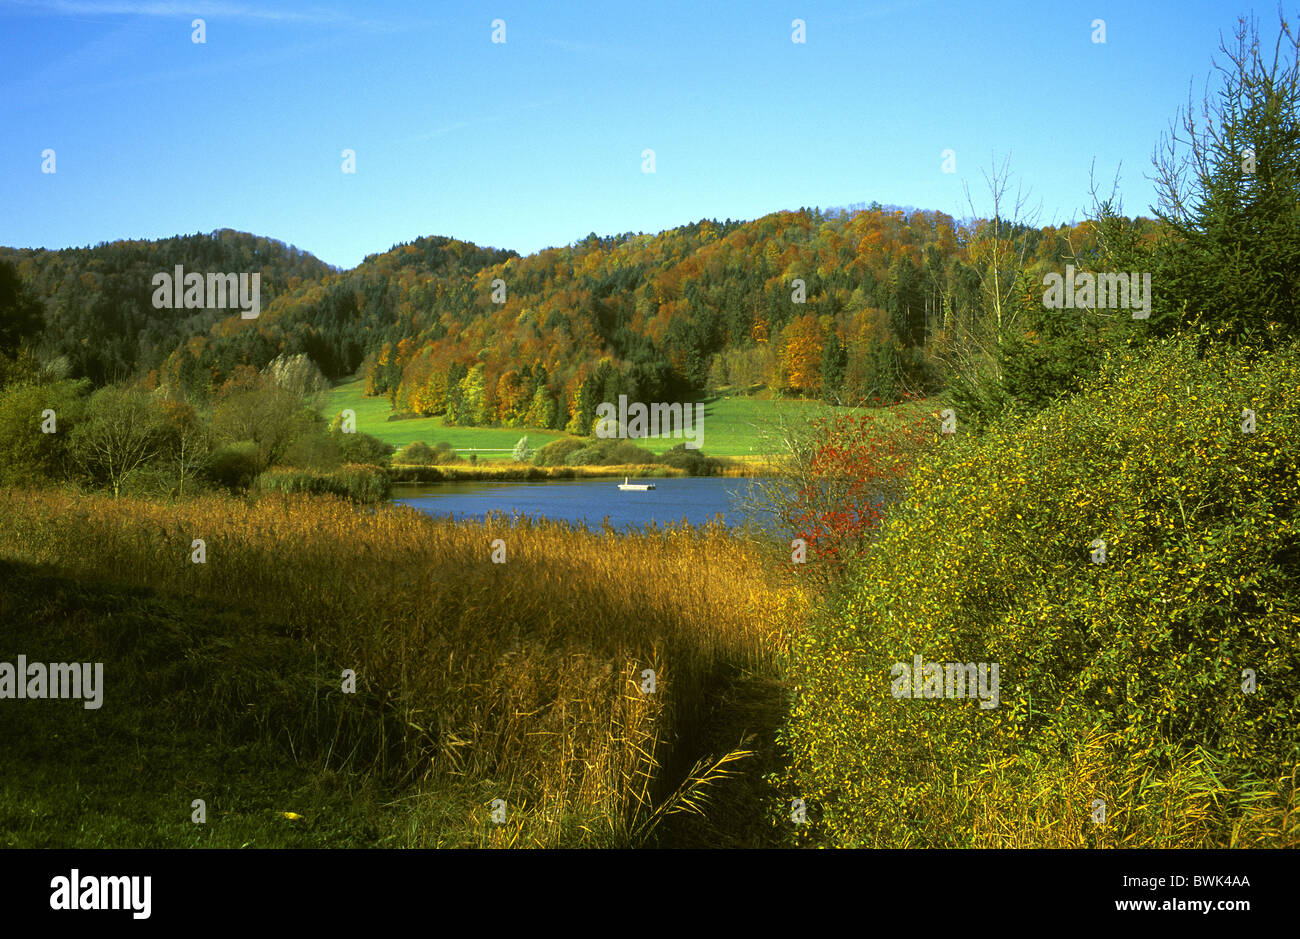 Switzerland Europe Canton Thurgau Bichelsee lake bathing lake autumn scenery landscape hill wood forest Stock Photo